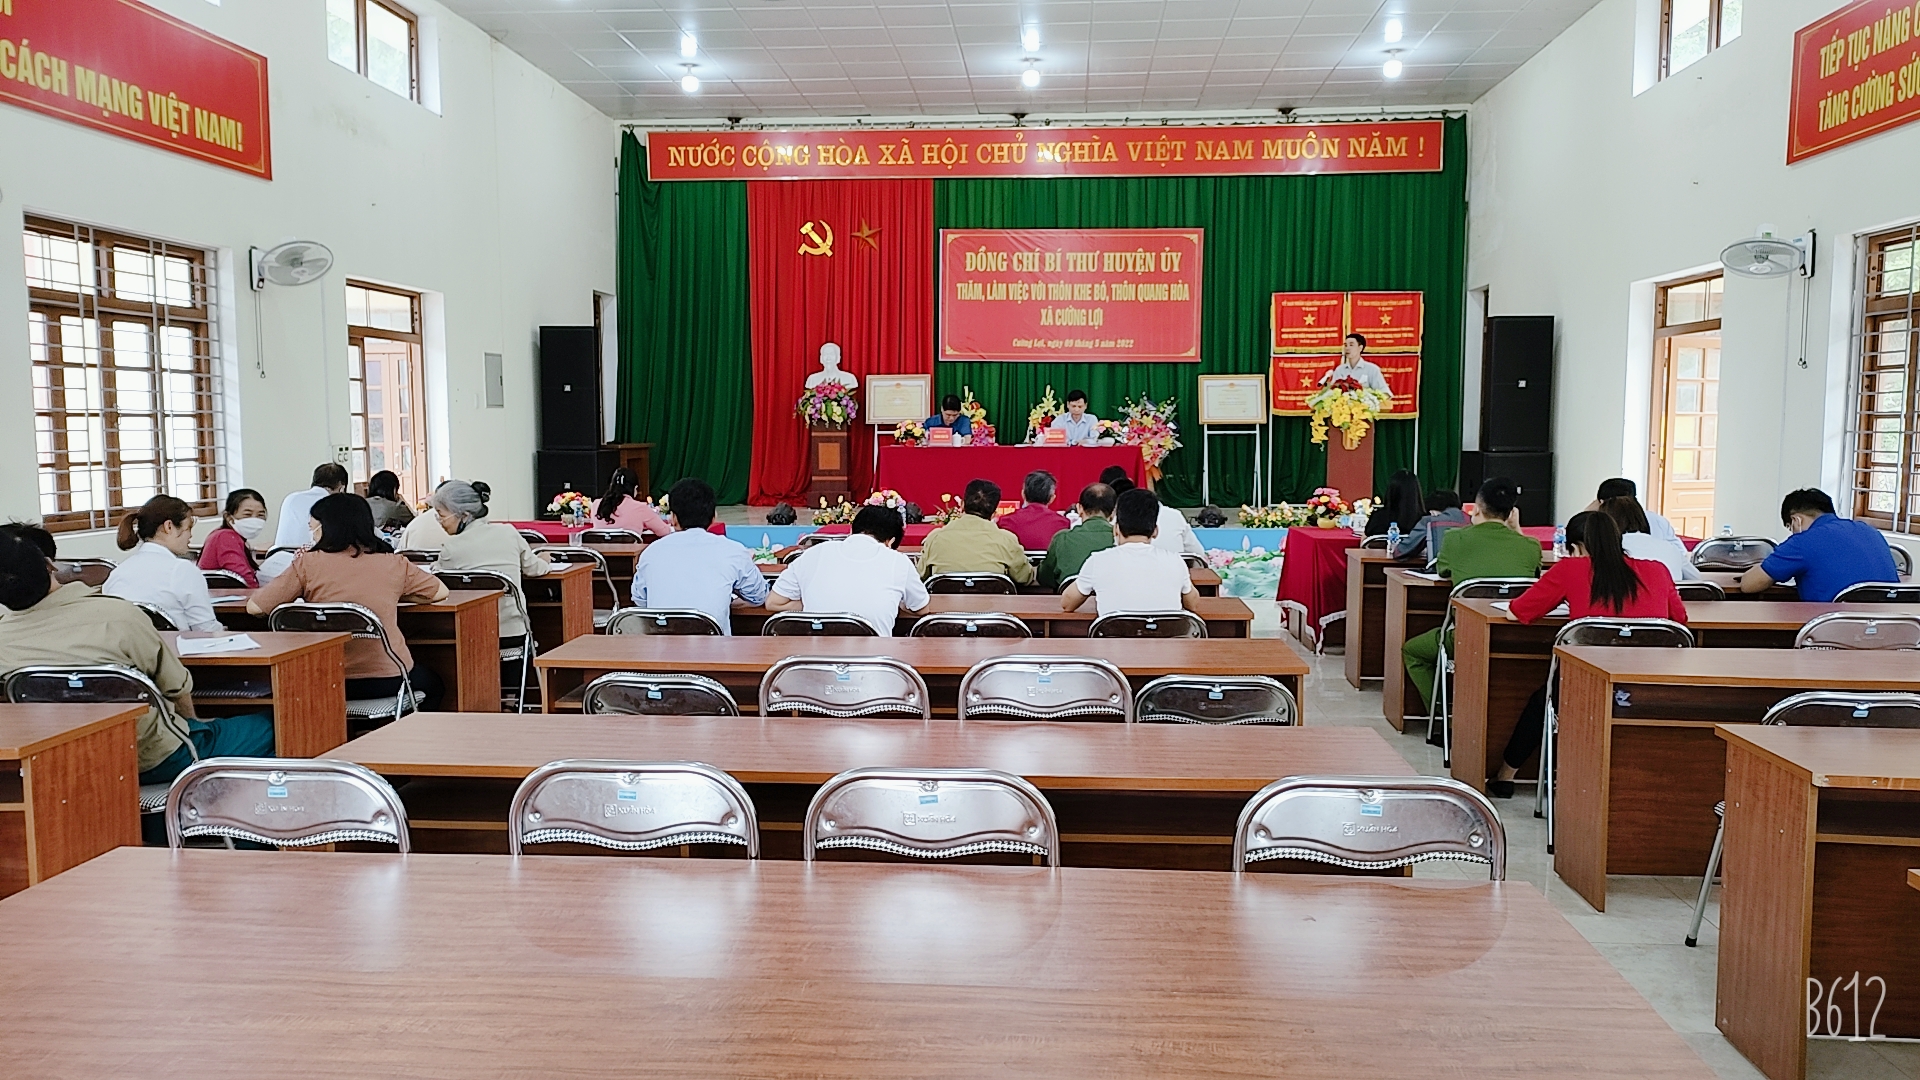 Đồng chí Vi Văn Chung - Bí thư chi bộ thôn Quang Hòa, báo cáo công tác triển khai học tập chuyên đề trong sinh hoạt Chi bộuyên đề